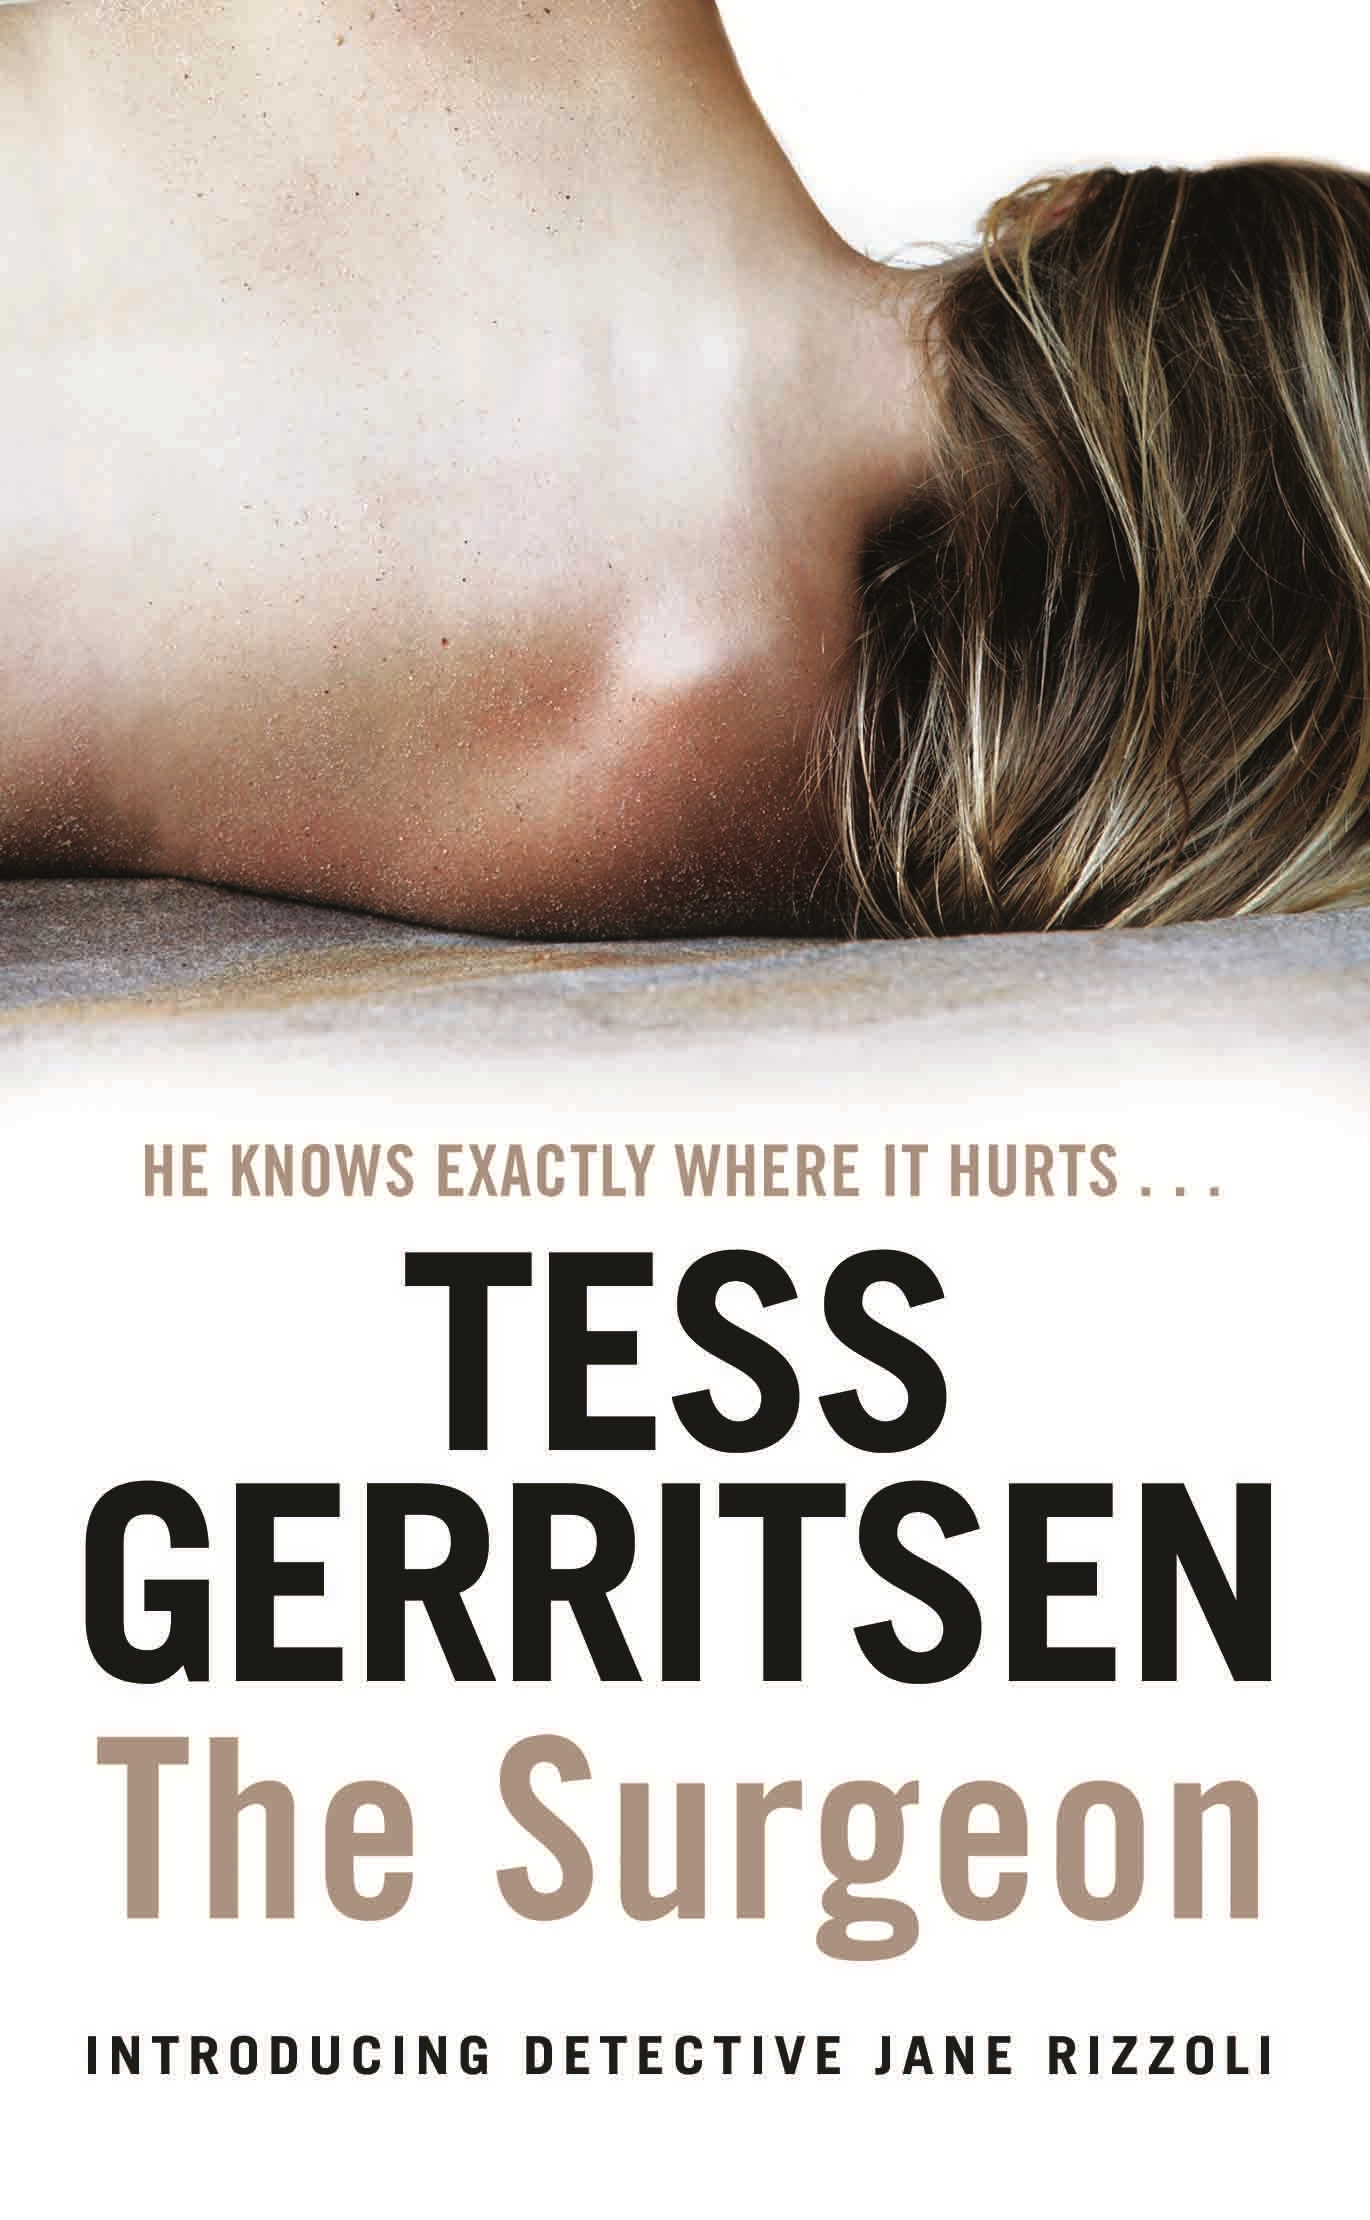 the surgeon tess gerritsen ebook torrent